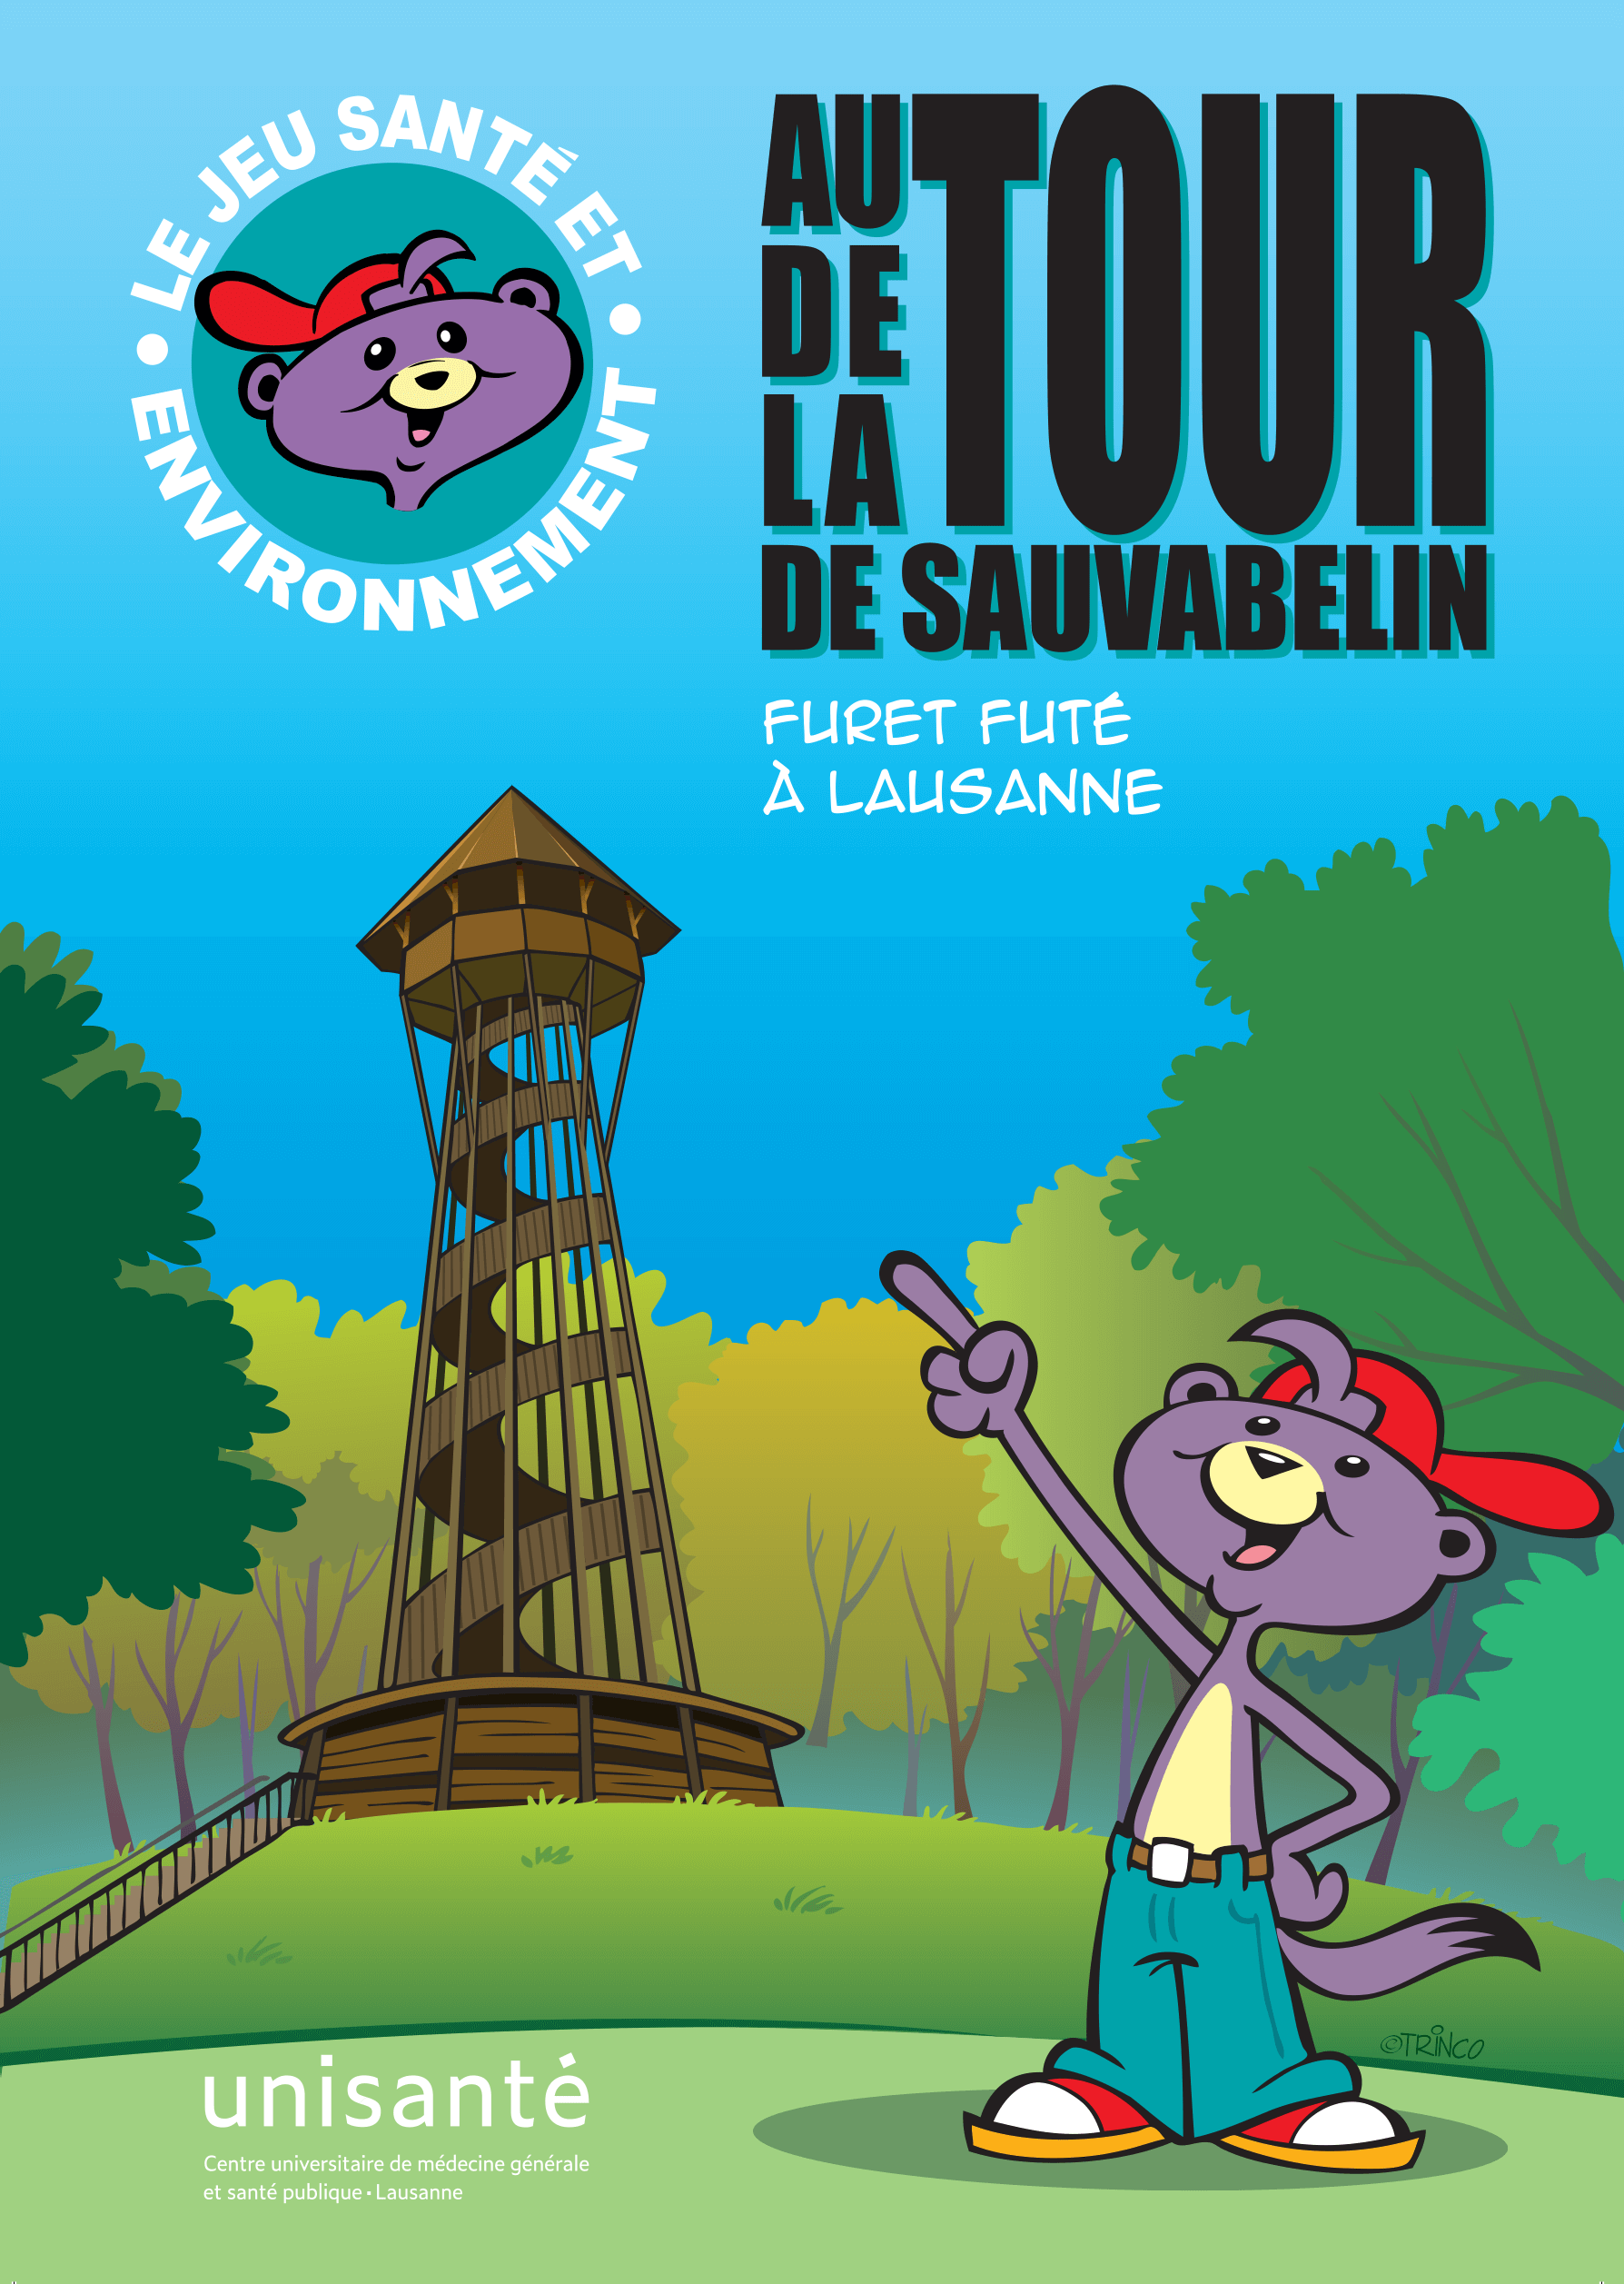 Lausanne: Autour de la tour de Sauvabelin, Furet Futé à Lausanne